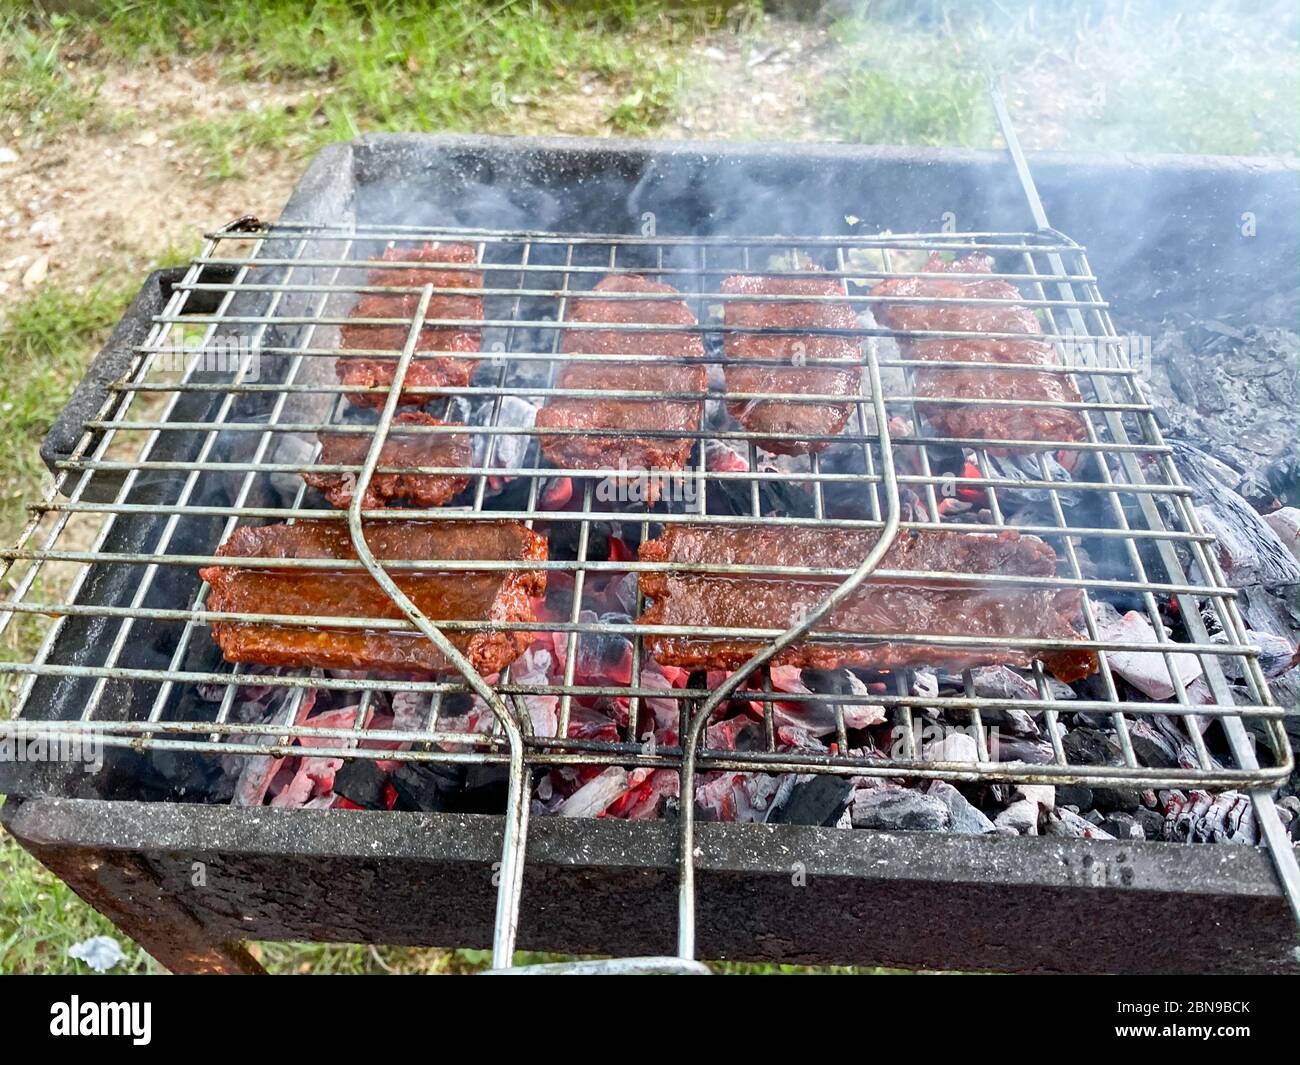 Leckeres gegrilltes Fleisch auf dem Grill - Türkische Wurst 'Sucuk' auf dem  mangal in der Natur. Picknick. Nahaufnahme Stockfotografie - Alamy